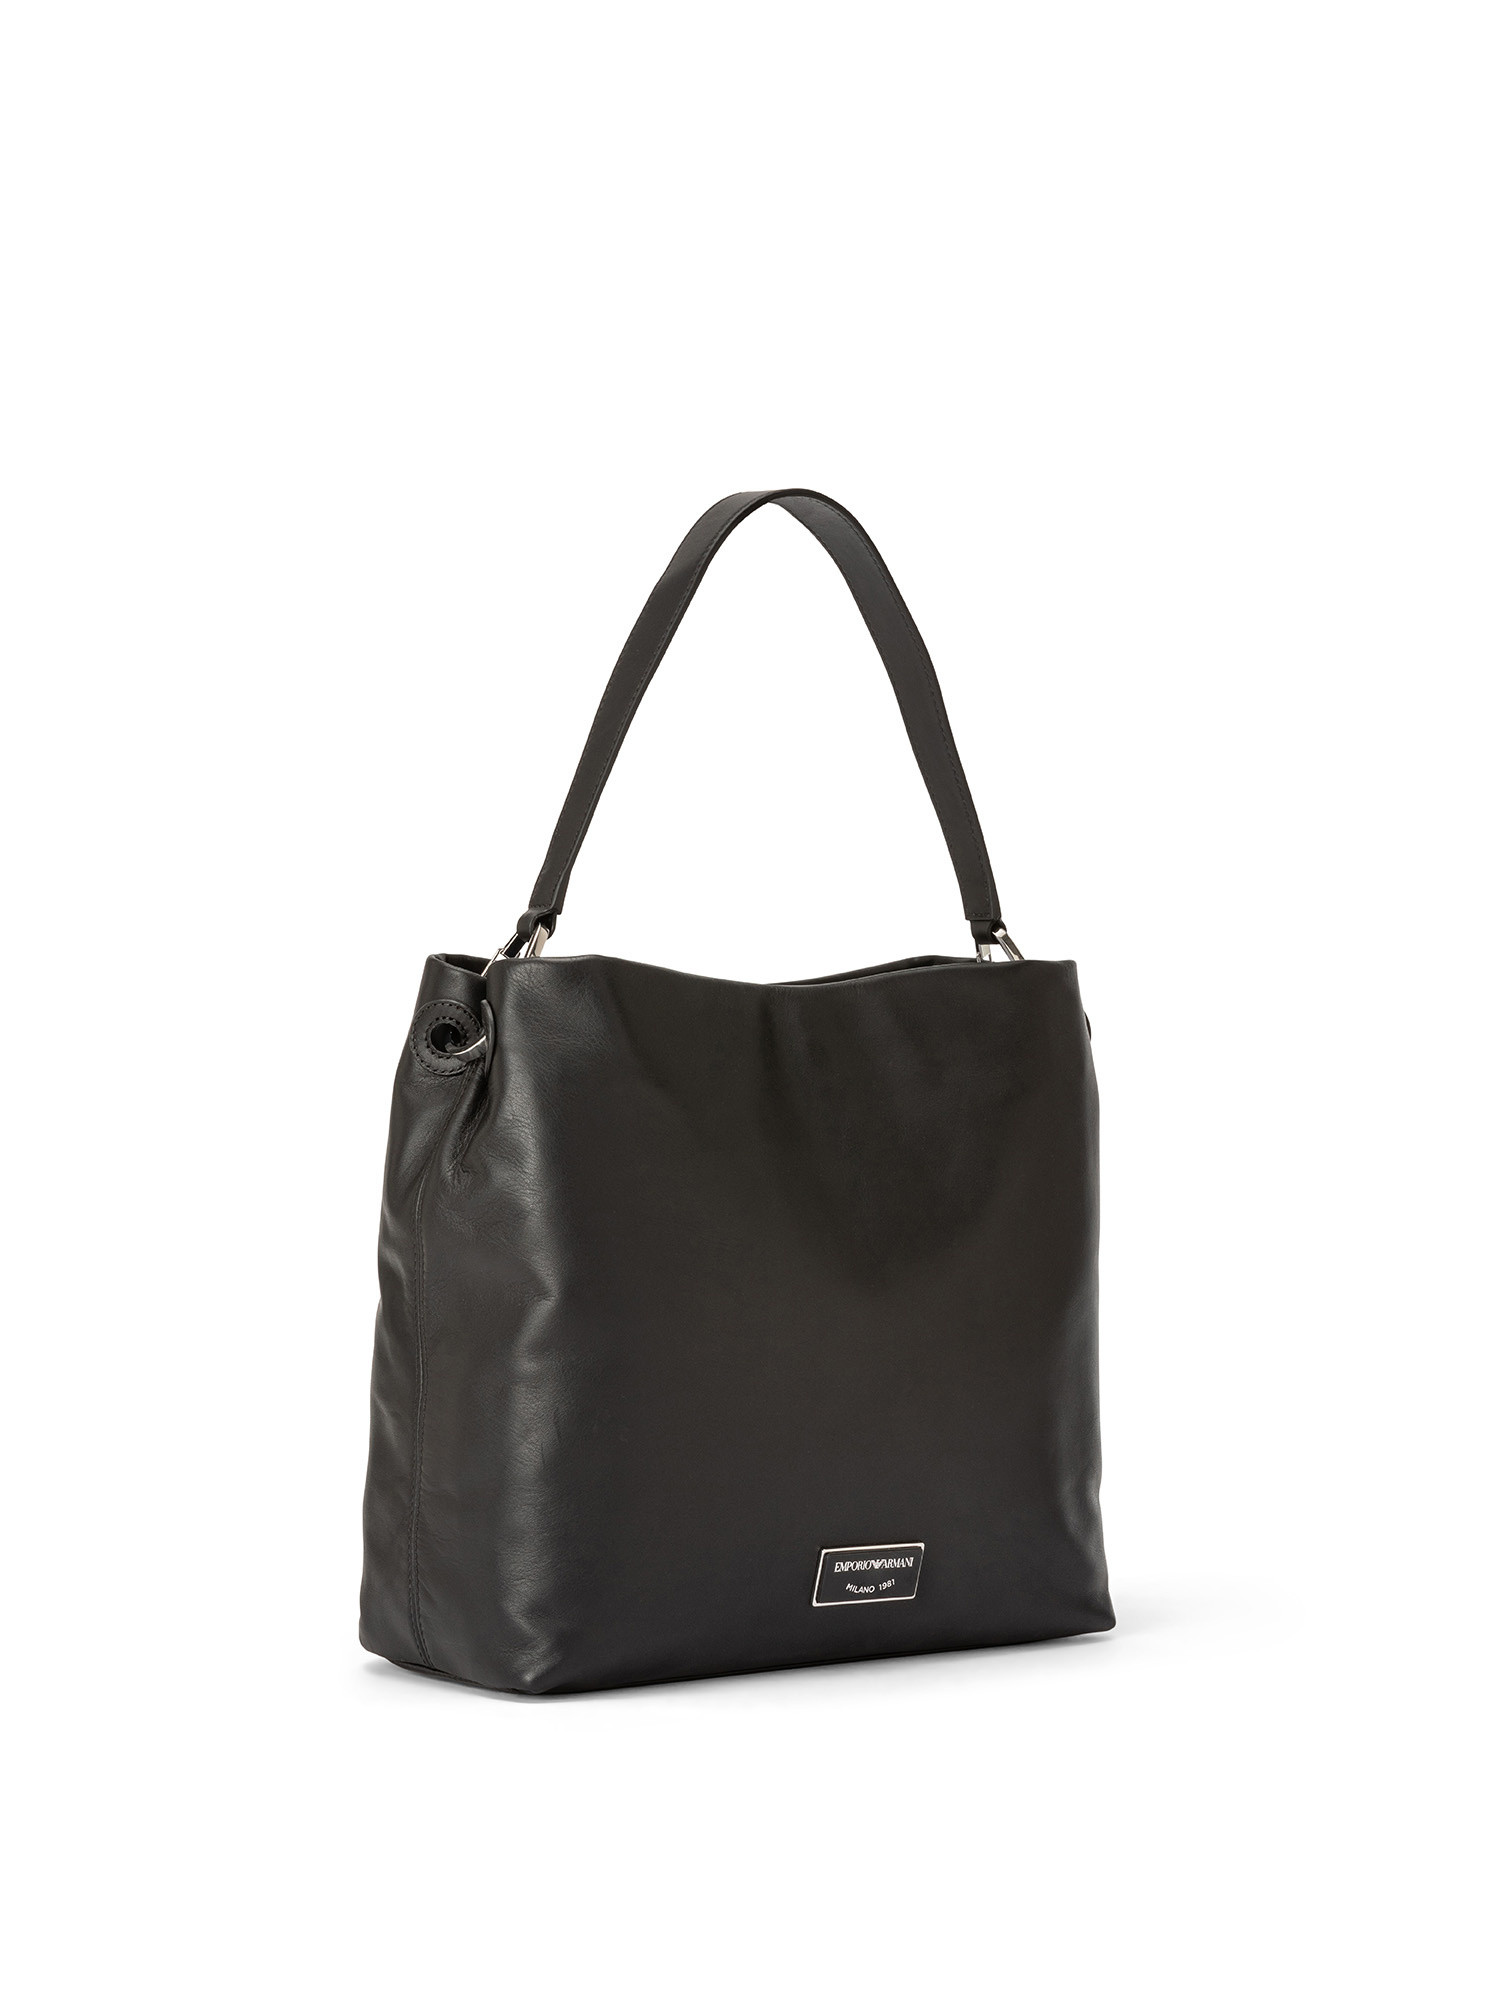 Emporio Armani - Leather shoulder bag with logo, Black, large image number 1